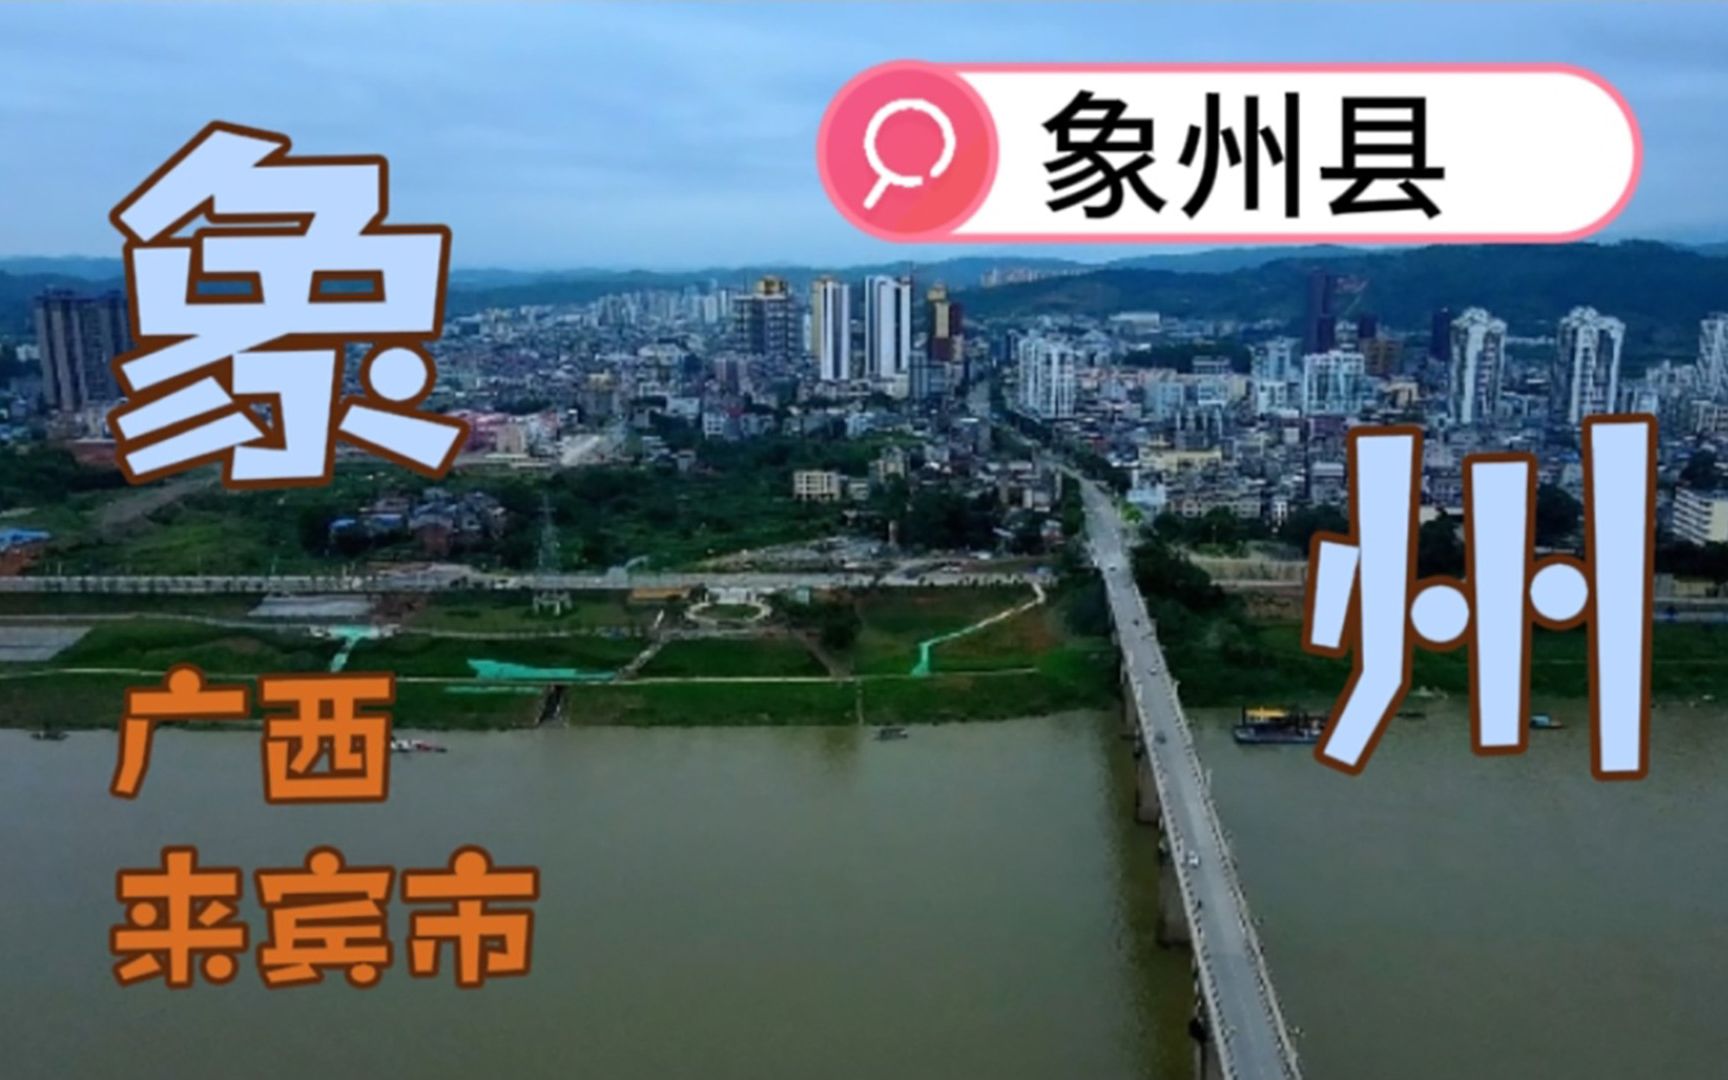 探访广西象州县城 一镜到底看看这里跟桂东南有多少差距